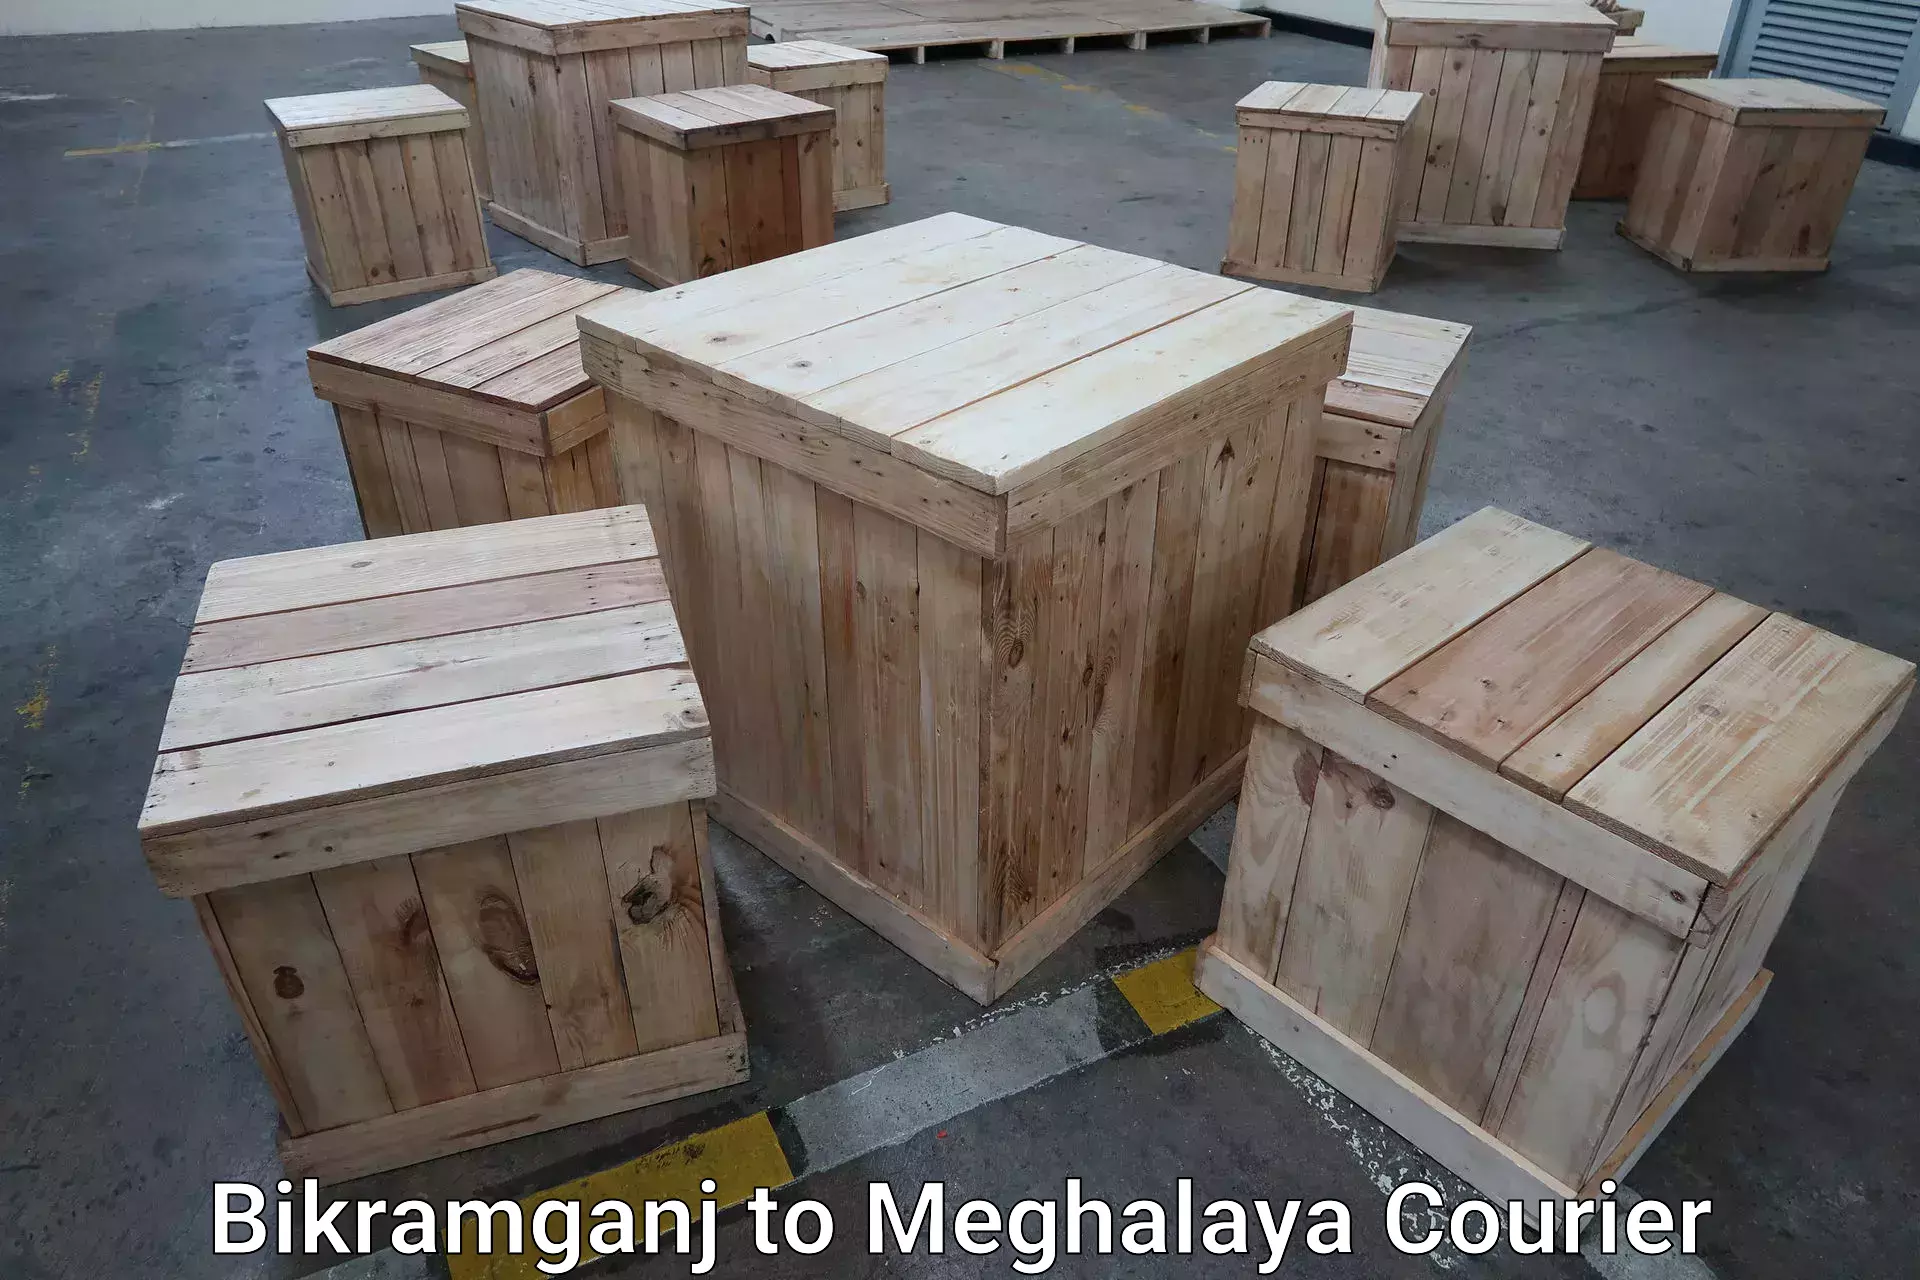 Luggage shipment specialists Bikramganj to Meghalaya